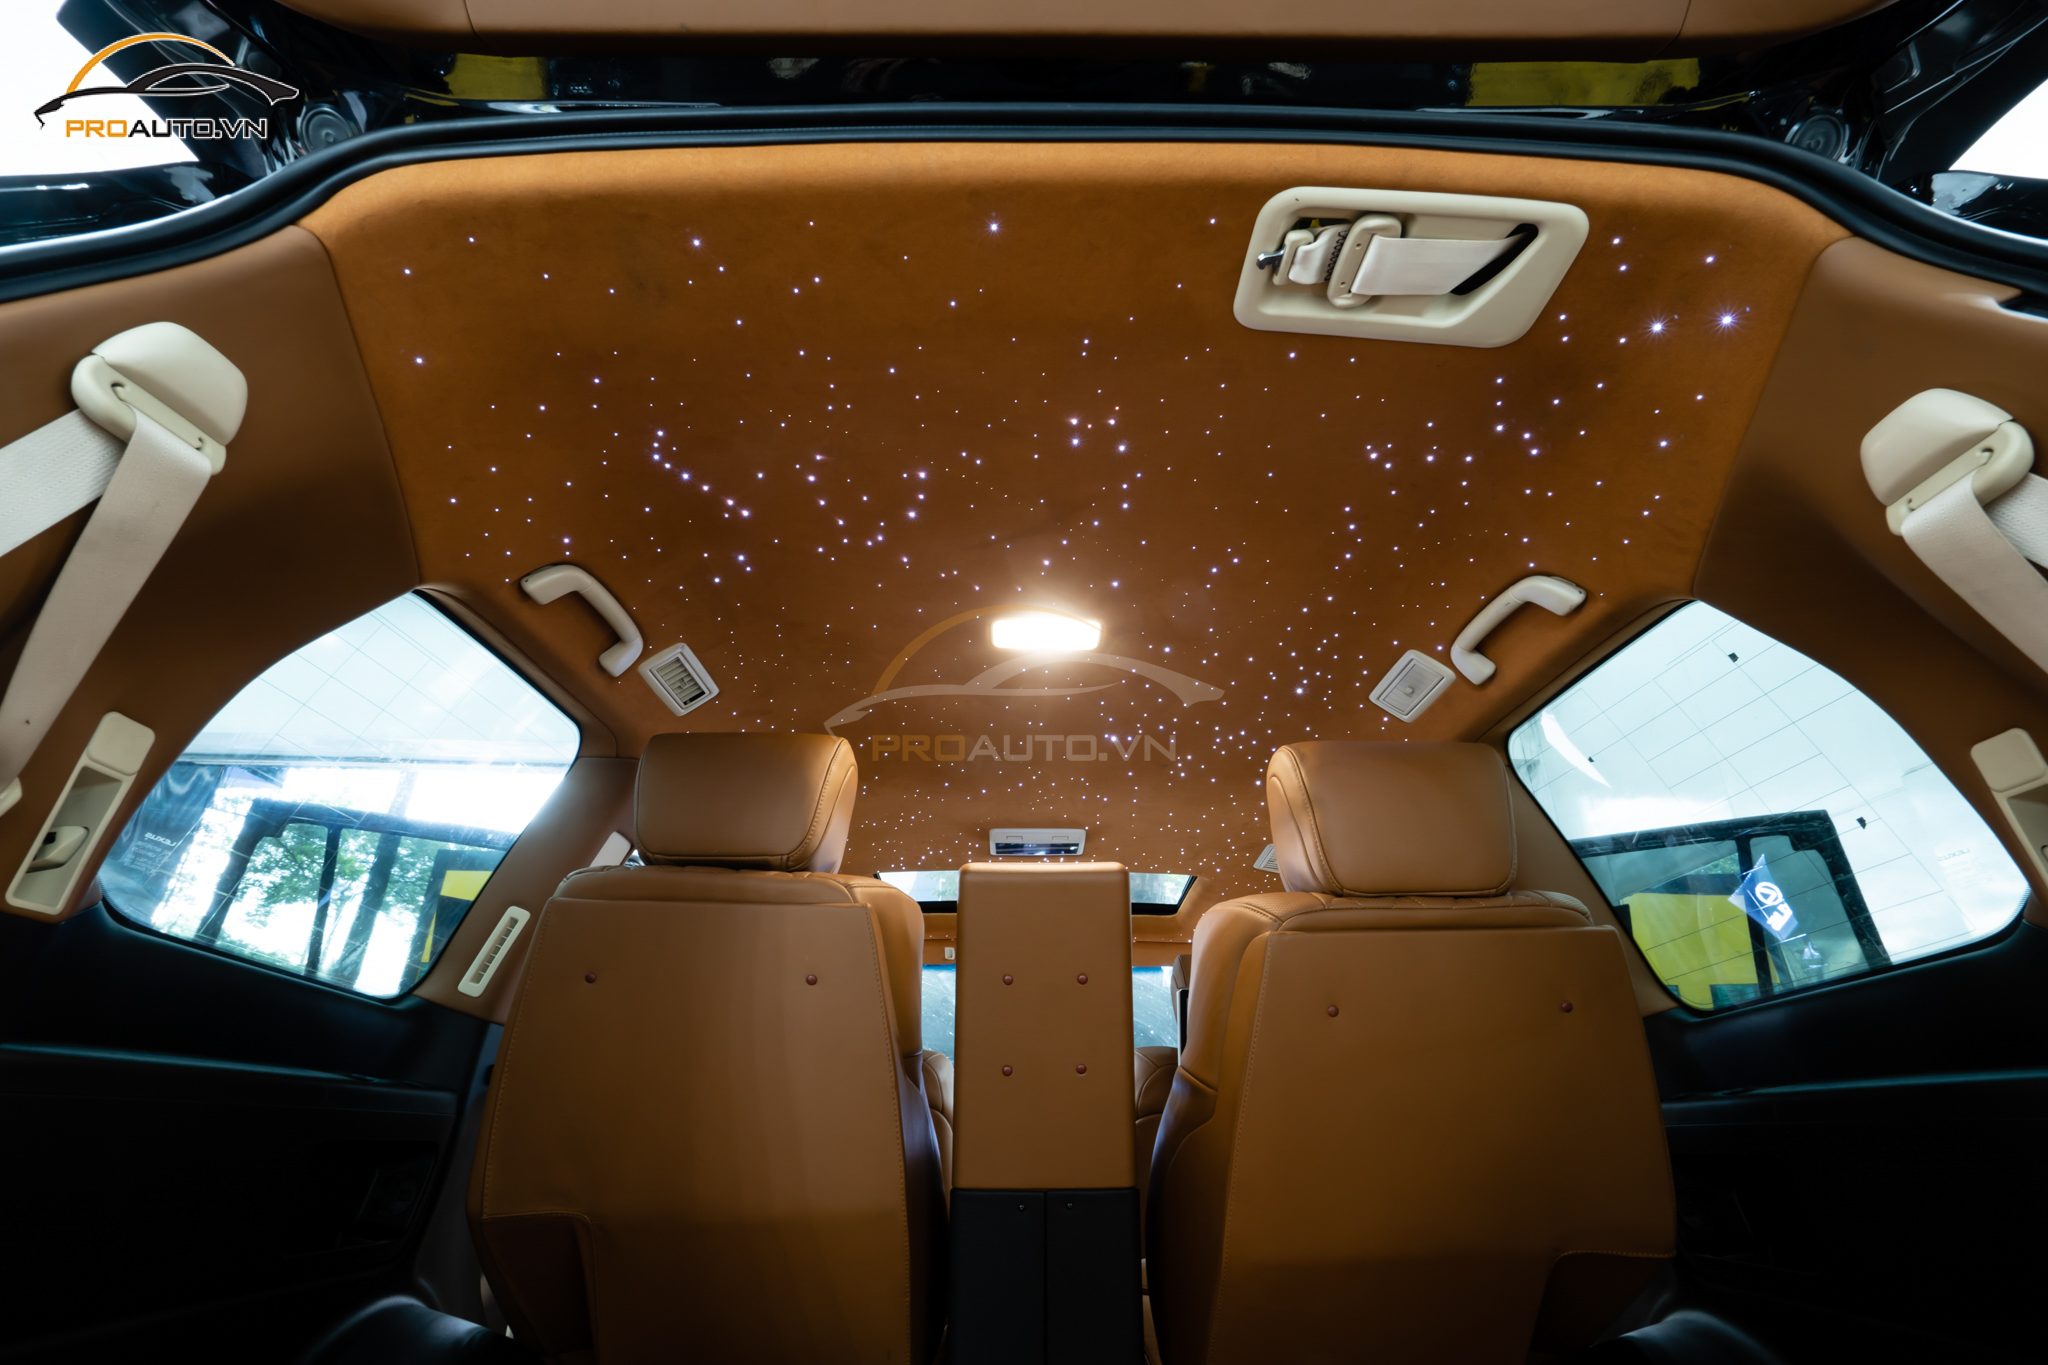 Độ ghế Limousine và trần ánh sao xe LX570 tại Proauto.vn